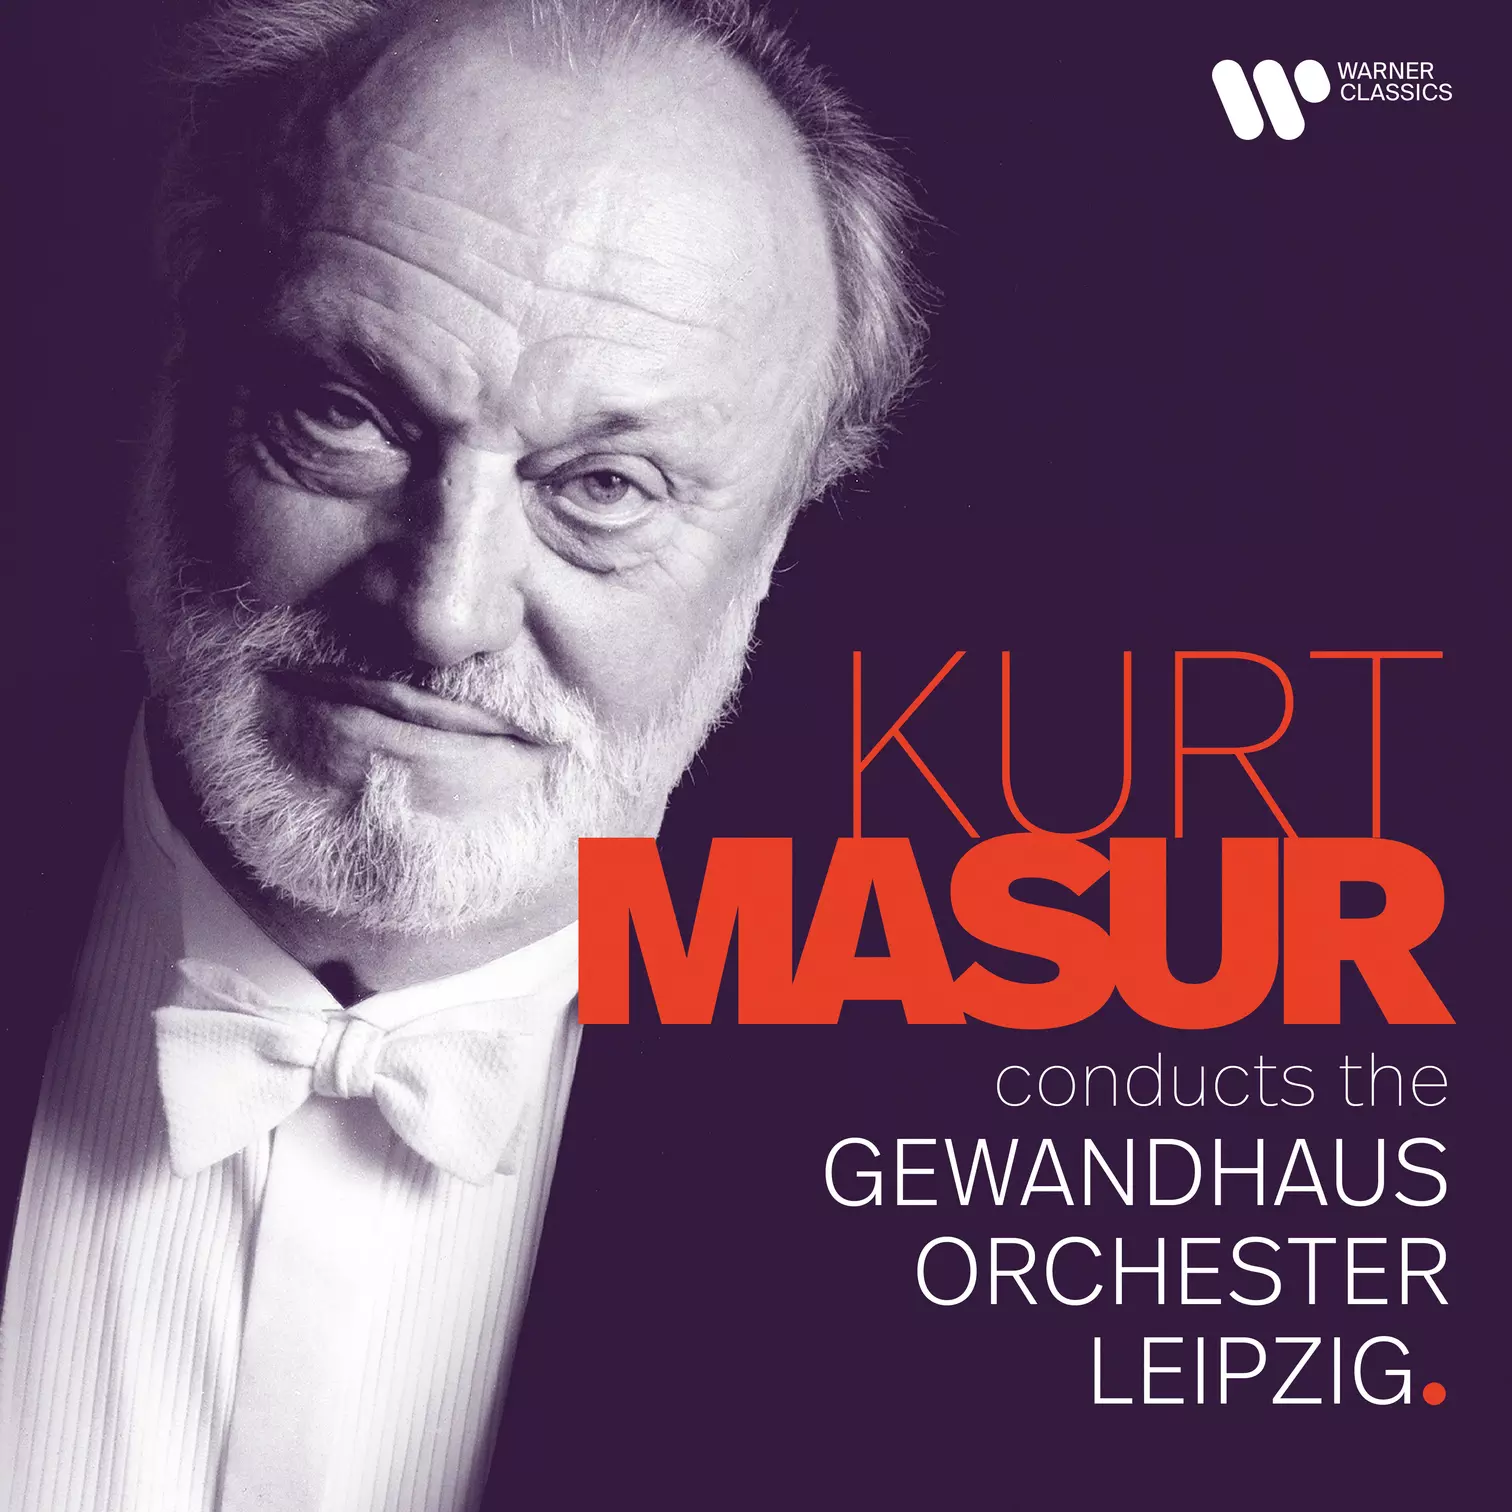 Kurt Masur Conducts the Gewandhausorchester Leipzig